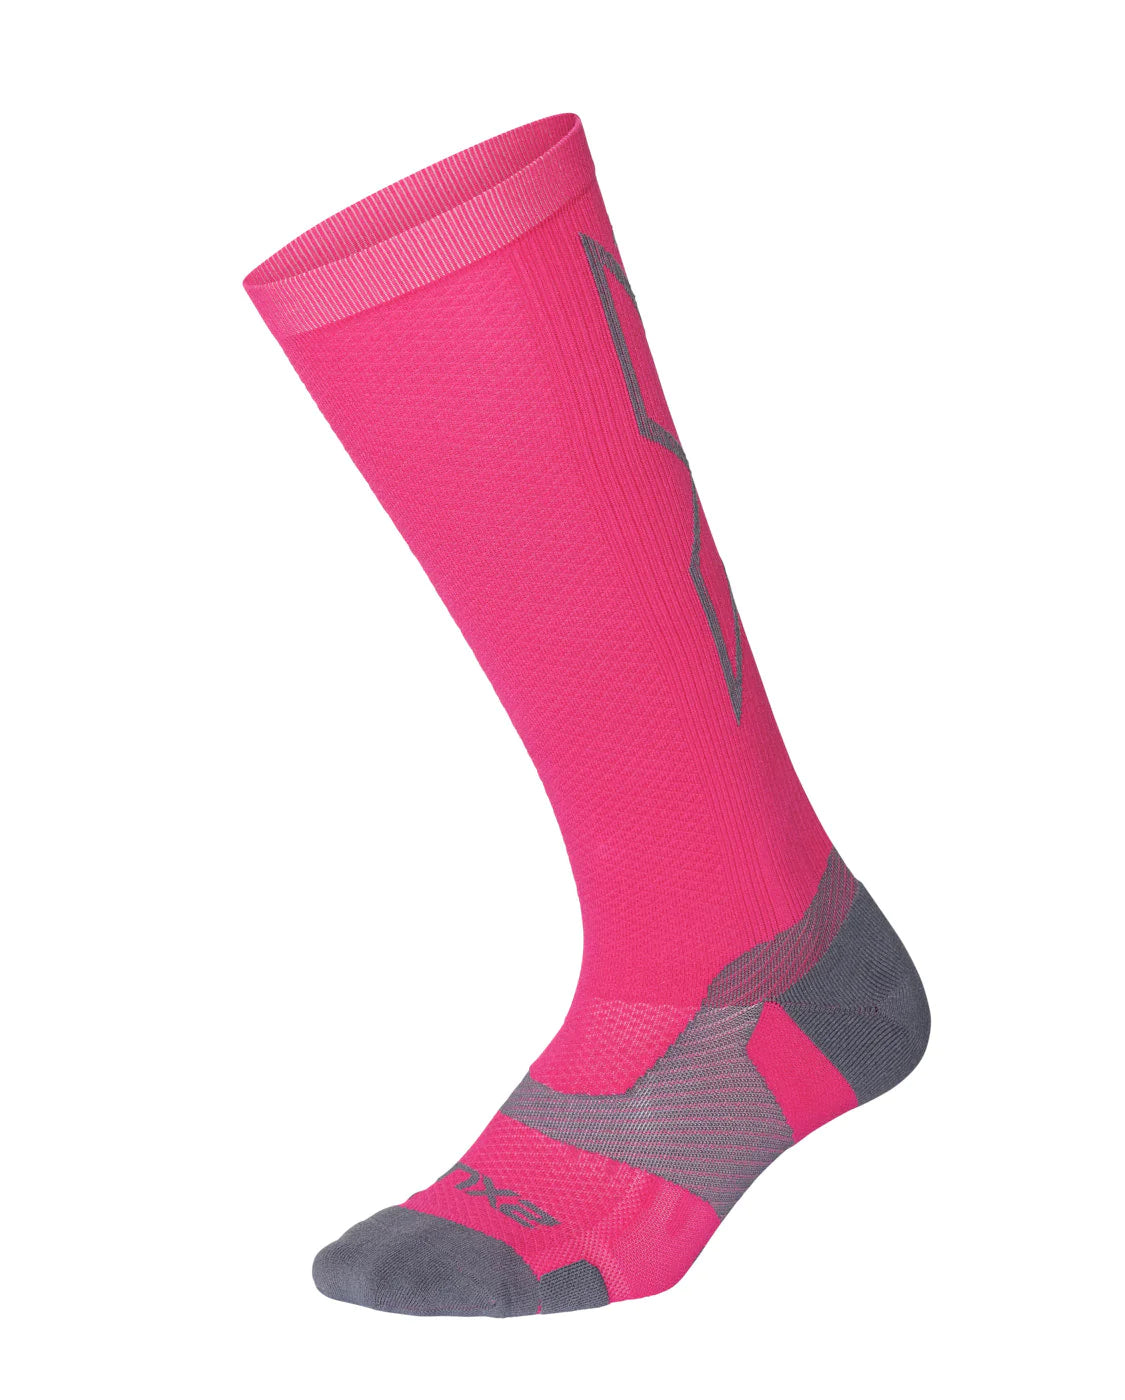 2XU VECTR L.Cush Full Length Socks, HotPink/Grey